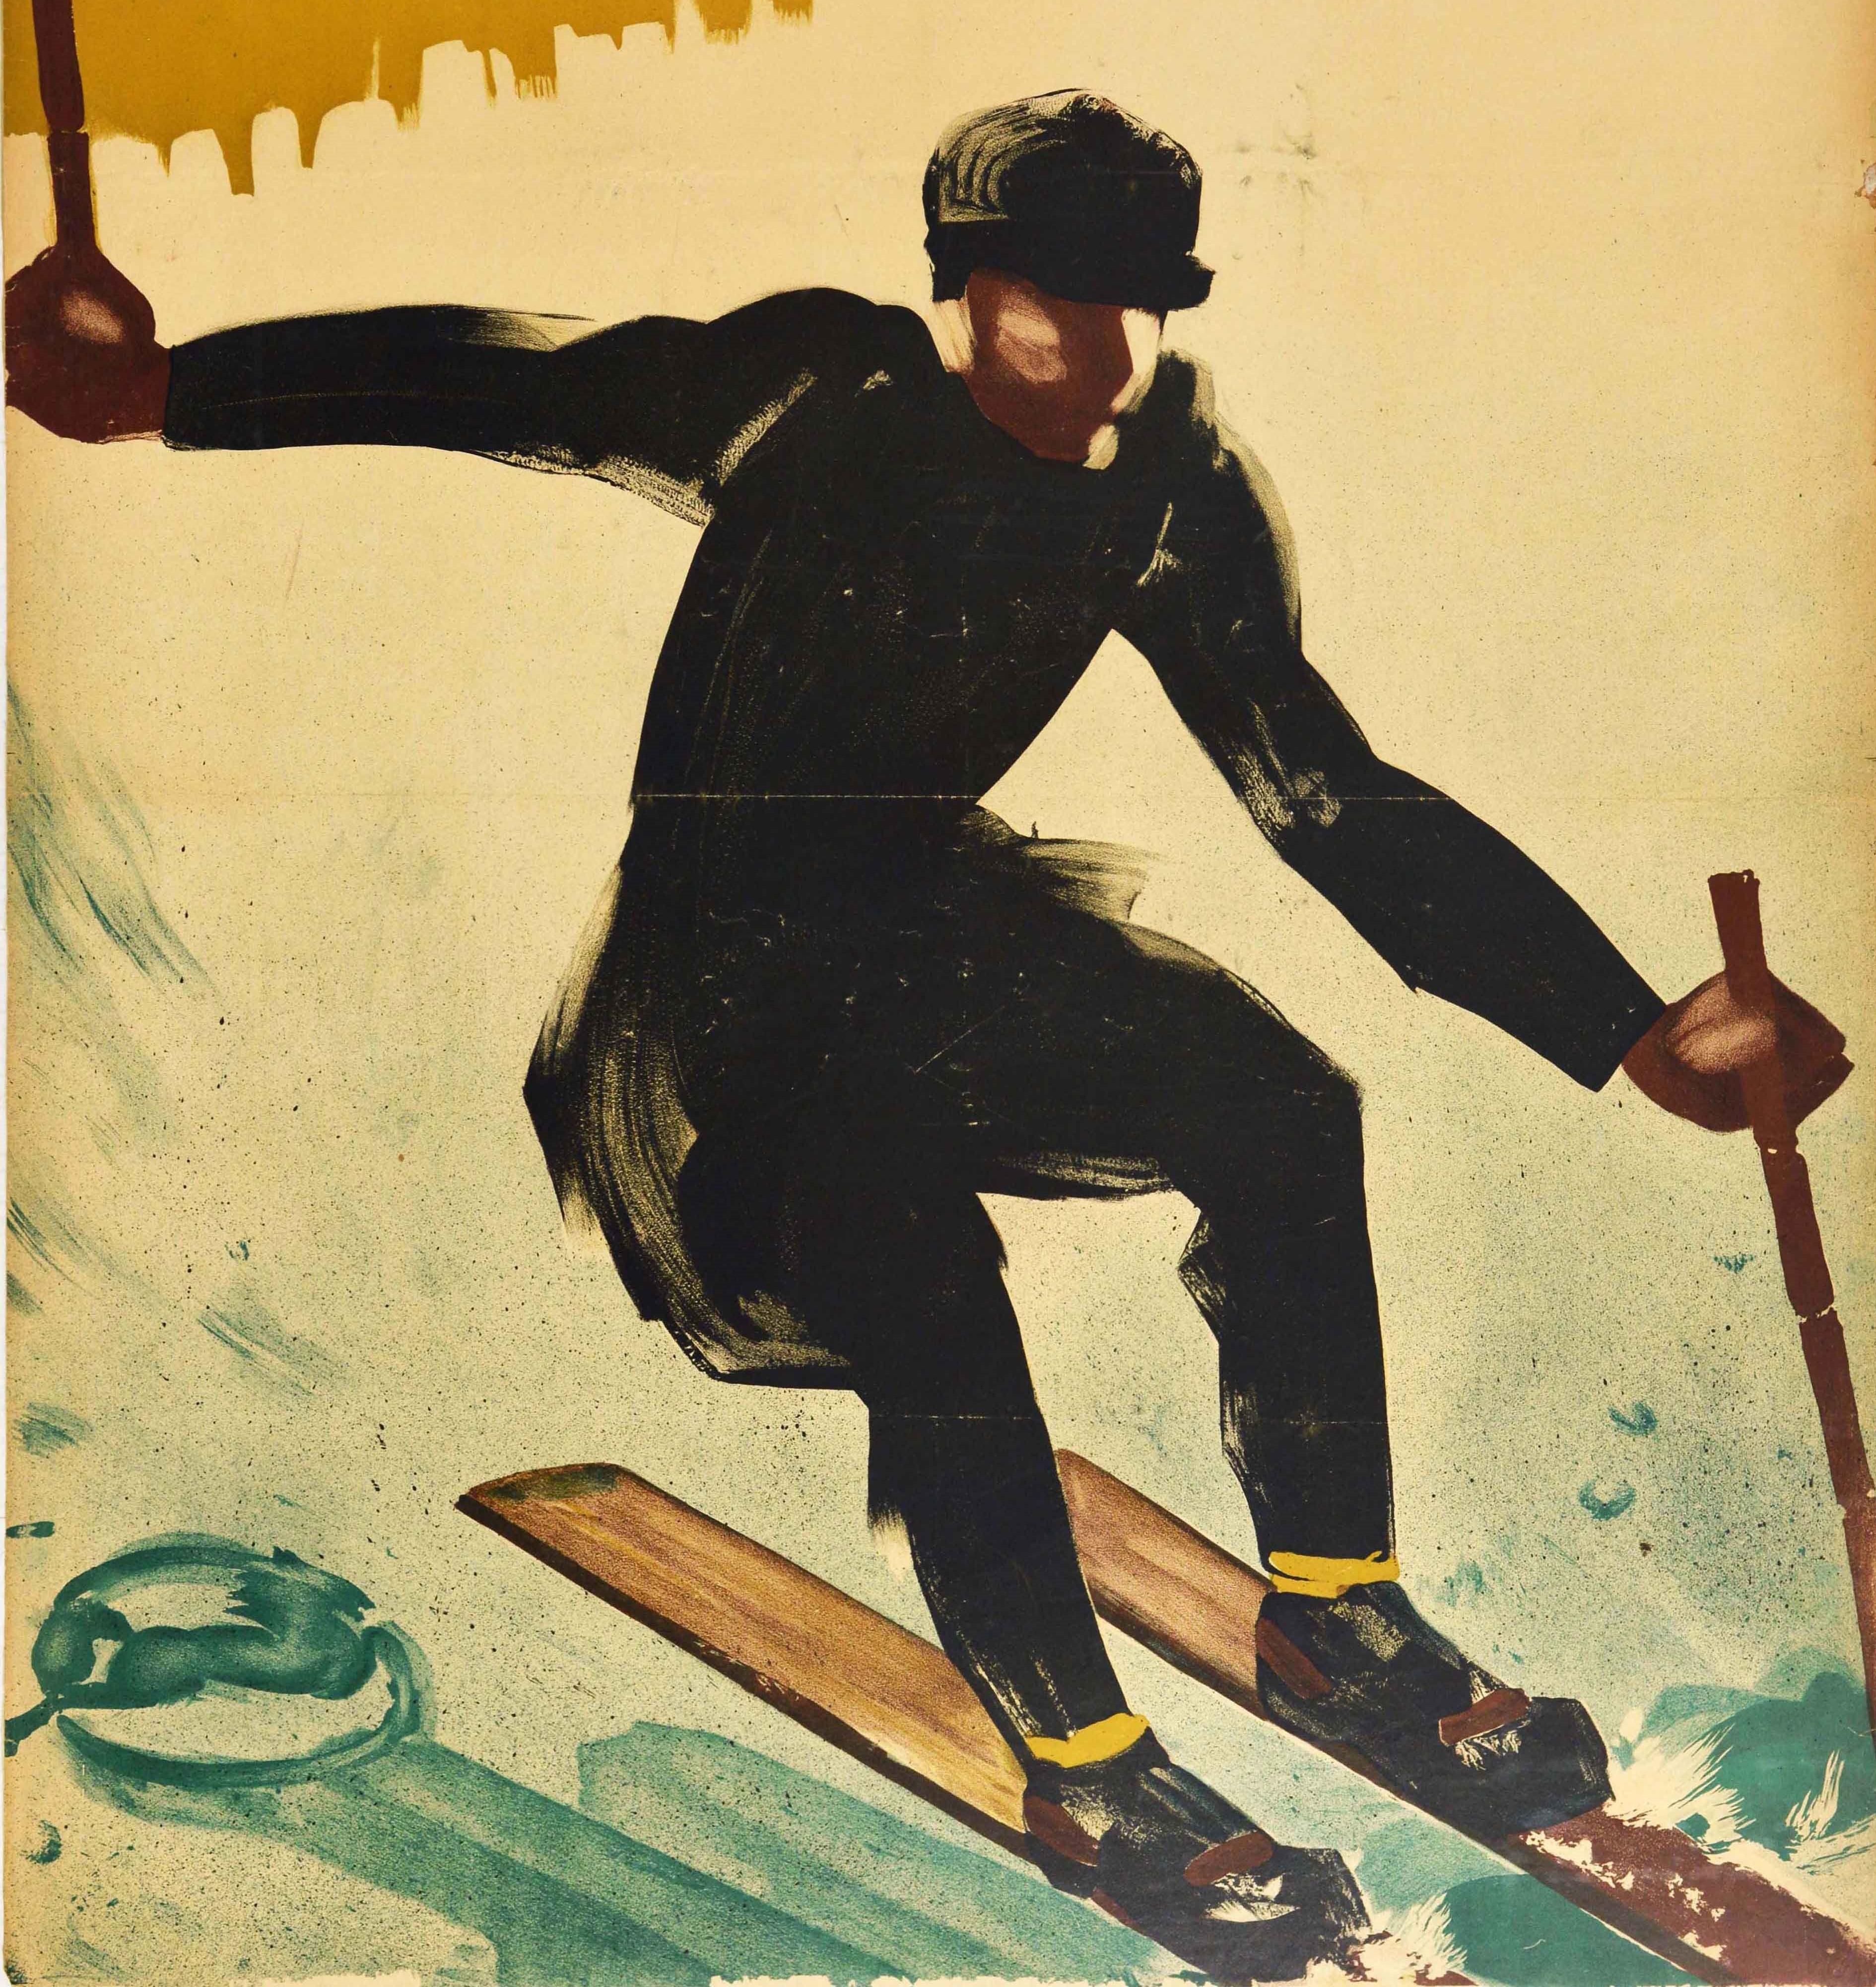 Original-Skiplakat mit dem Titel Wintersport, das ein dynamisches Kunstwerk von Karl Biebrach (geb. 1882) zeigt, das einen schwarz gekleideten Skifahrer darstellt, der auf Holzskiern einen verschneiten Hang hinunterfährt. Großes Format. Ordentlicher